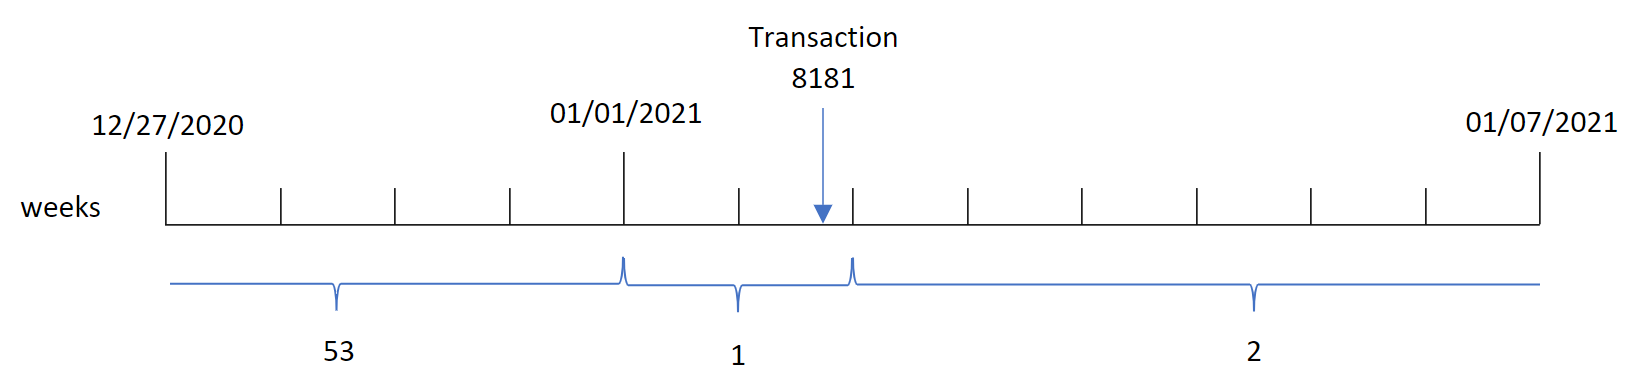 Schema che mostra che la funzione weekyear() identifica che la transazione 8181 è avvenuta nella settimana 1 e restituisce l'anno di quella settimana, il 2021.